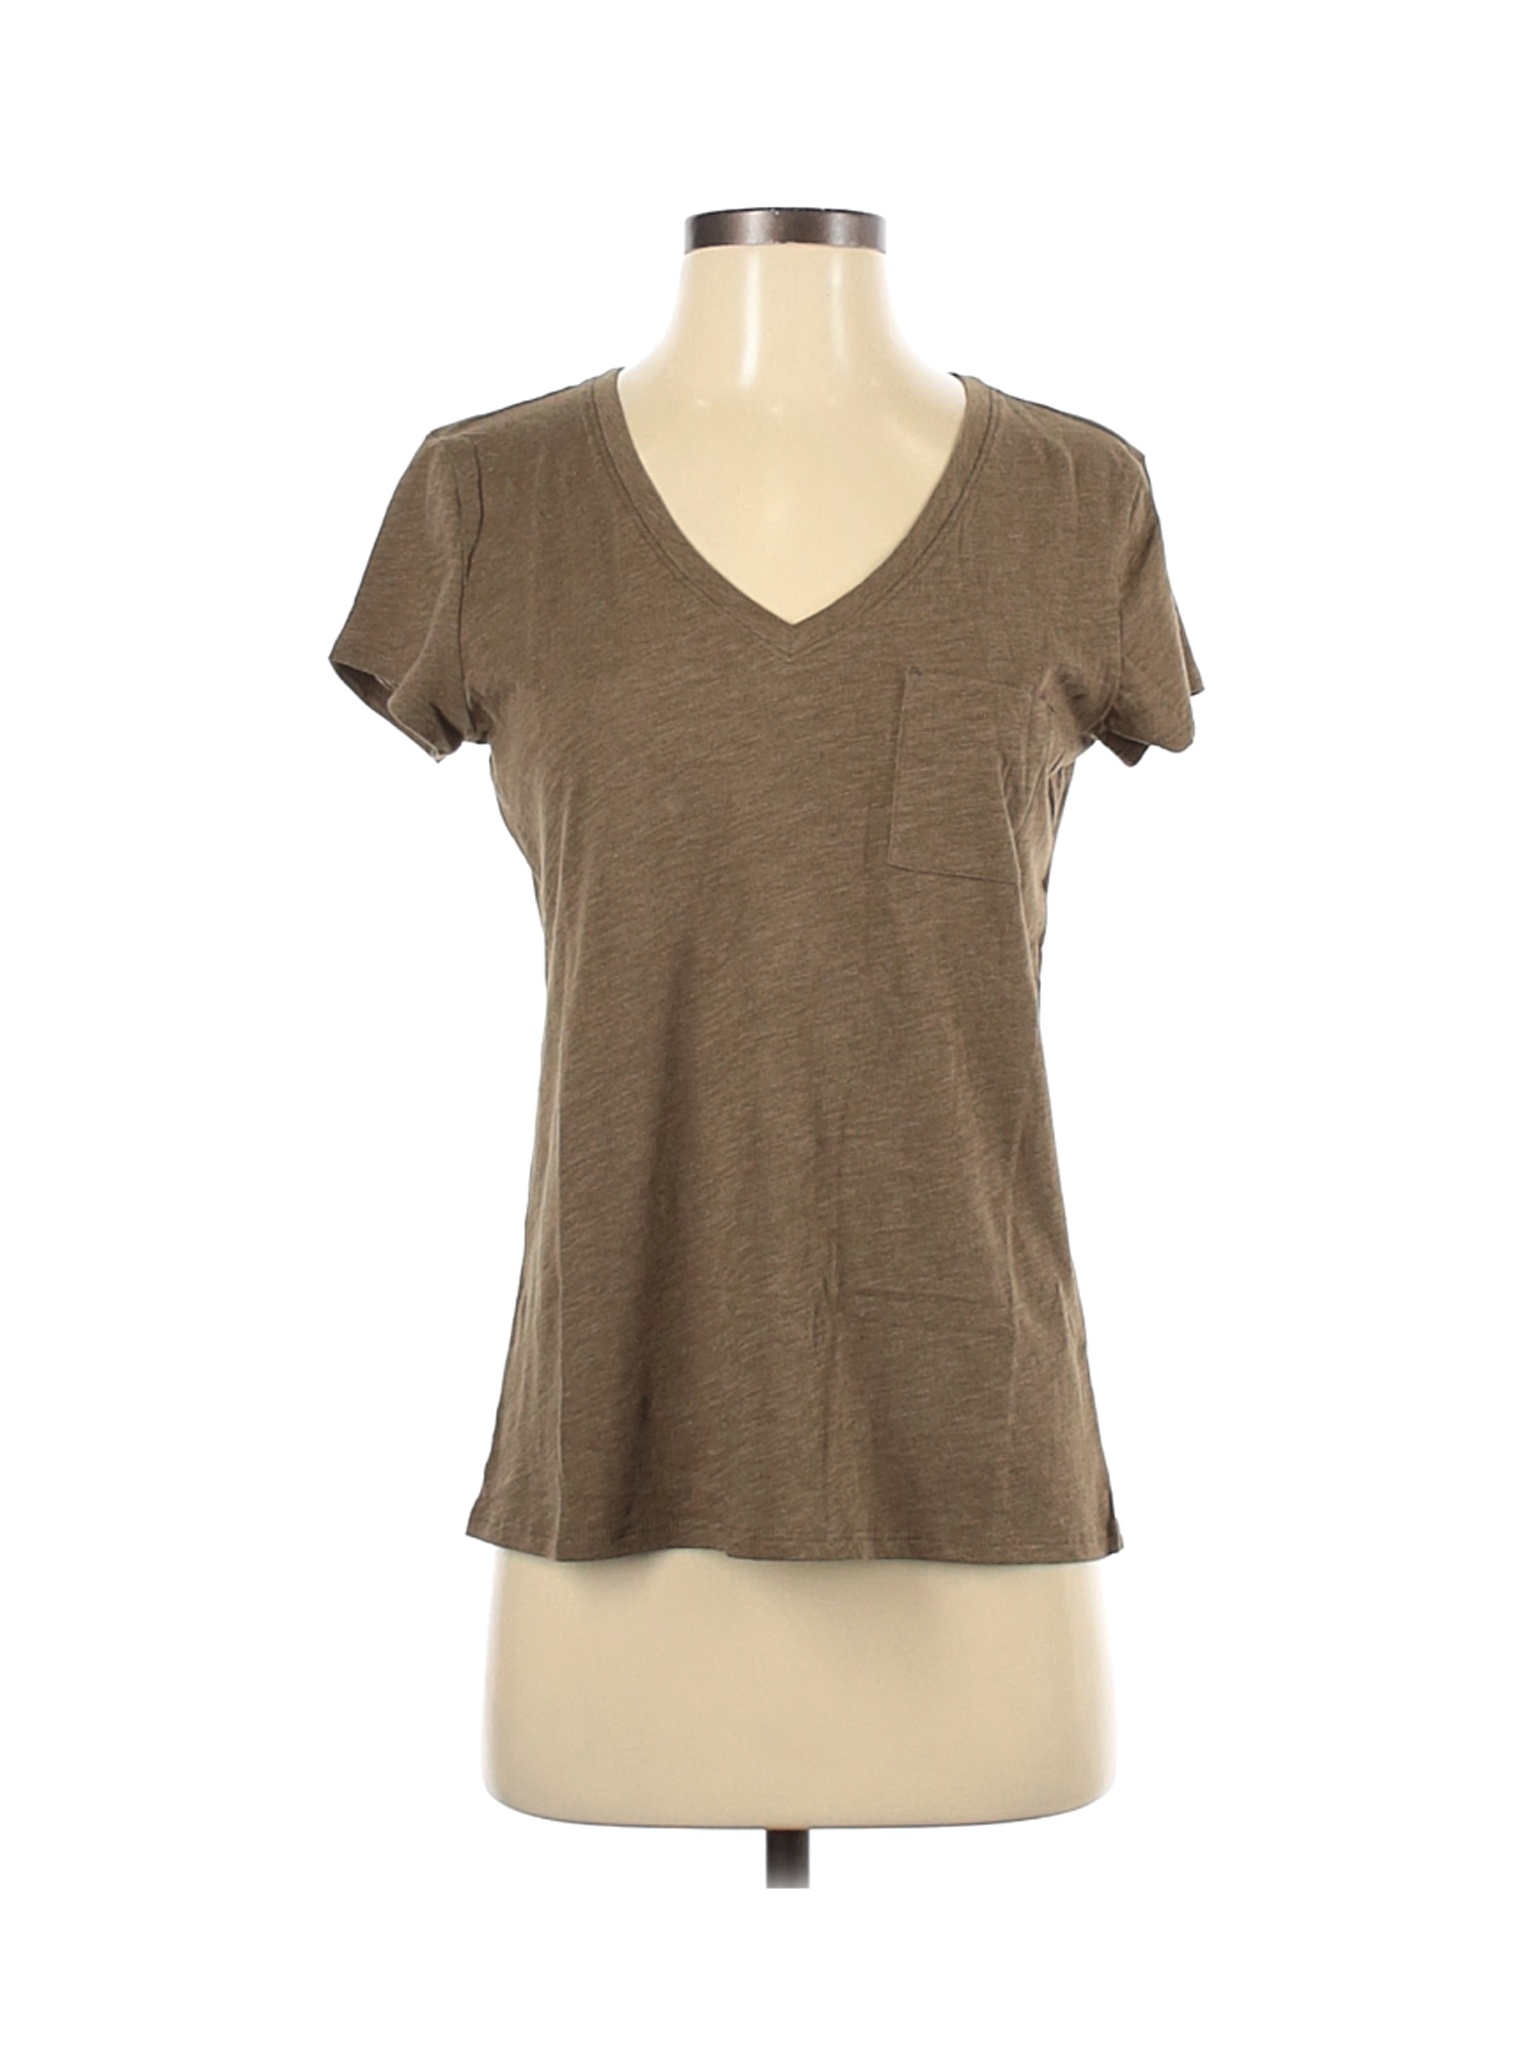 Garnet Hill Women Green Short Sleeve T-Shirt XS | eBay